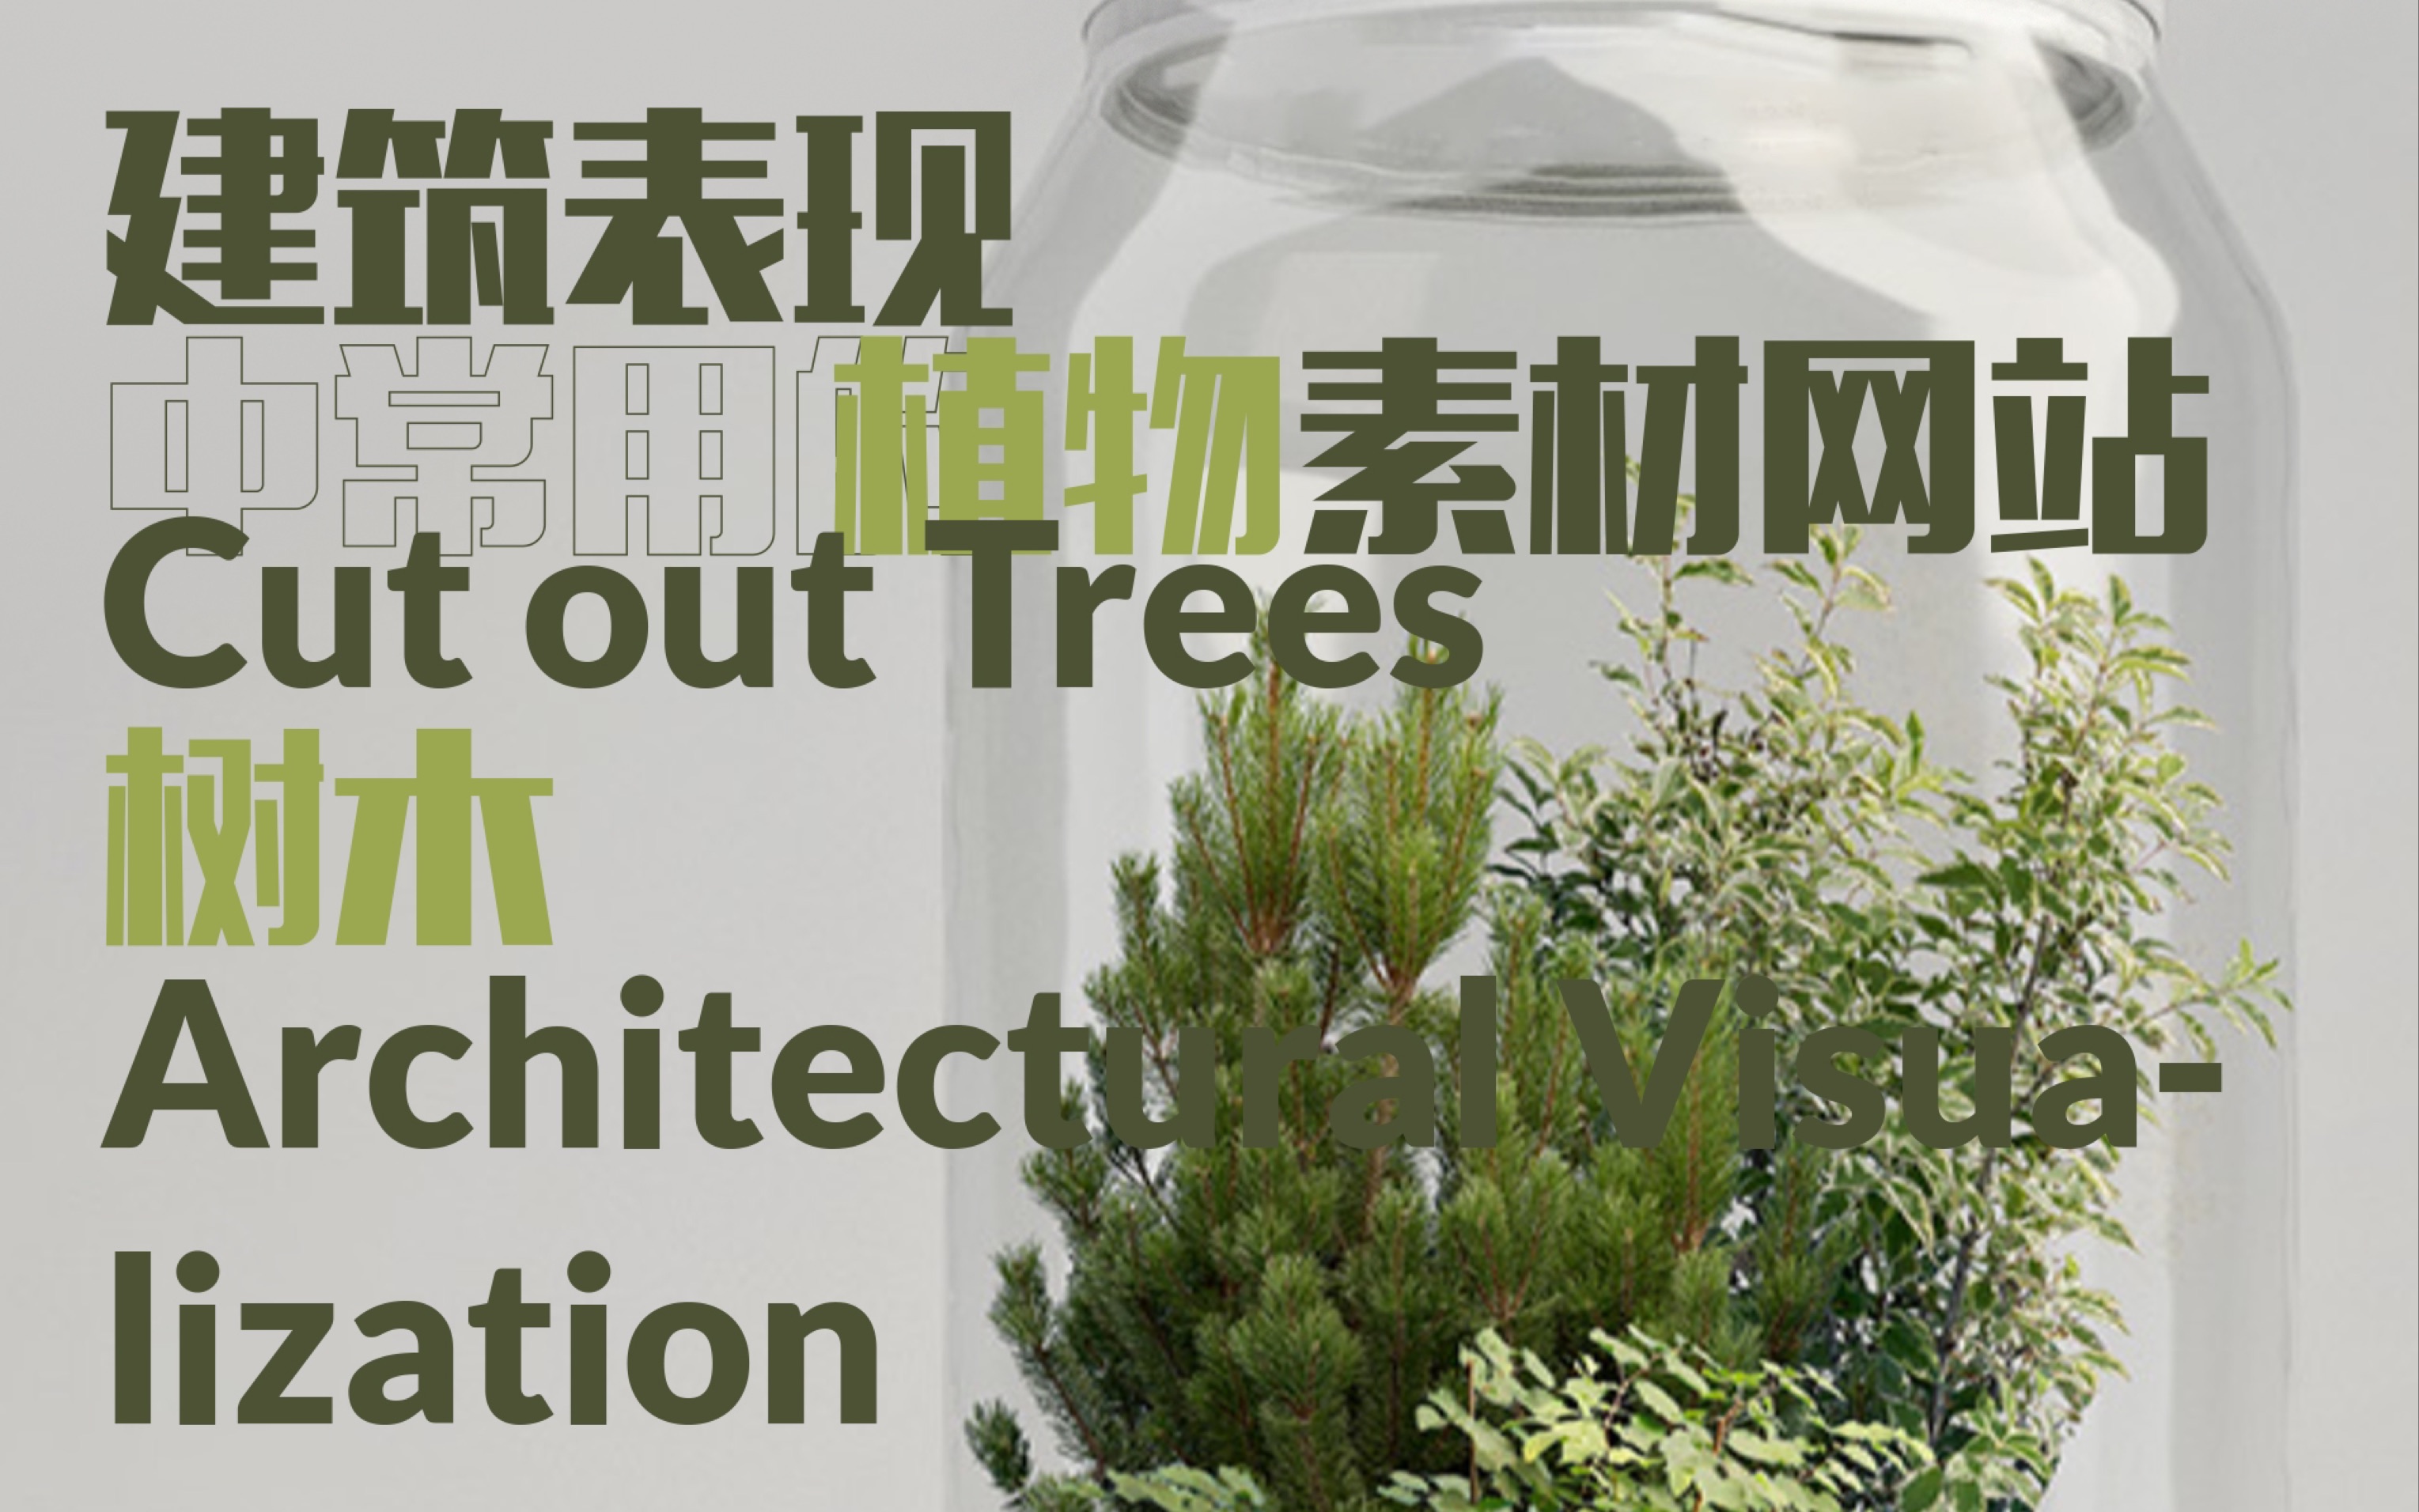 分享建筑表现时常用的植物素材网站 / 建筑师的素材库 2